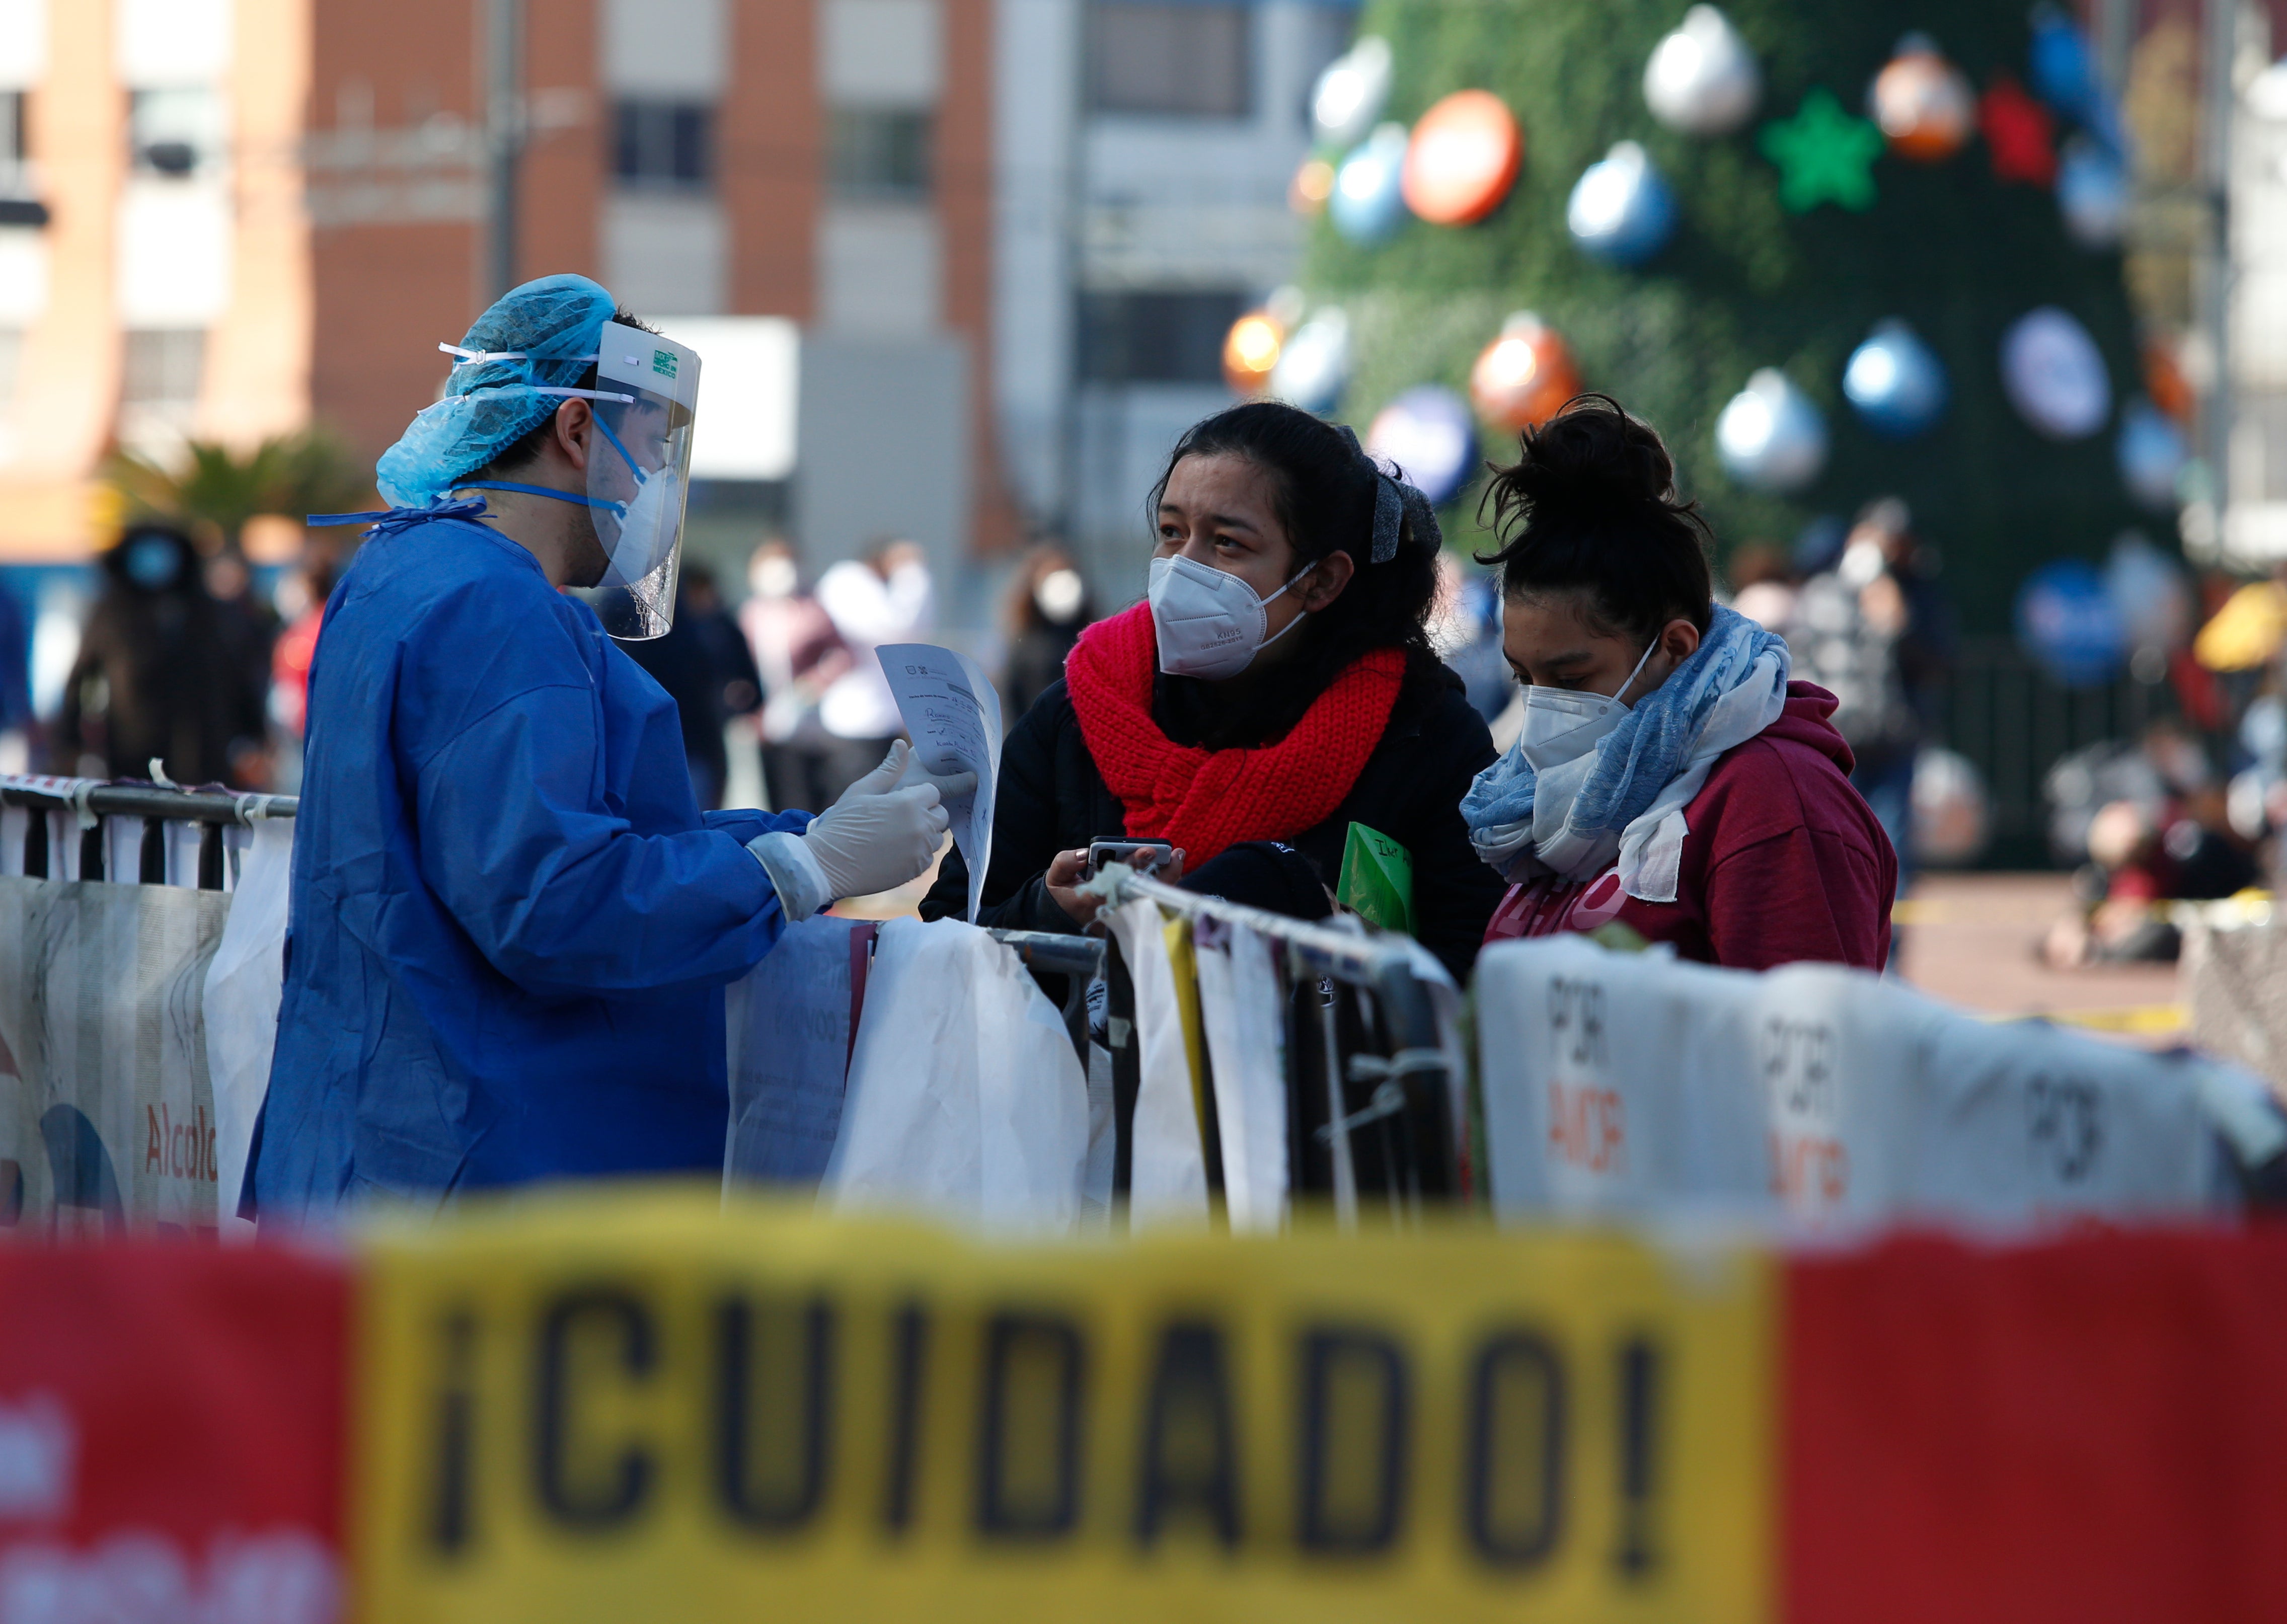 La economía de América Latina cayó durante 2020 un 6.9% debido a la pandemia de COVID-19